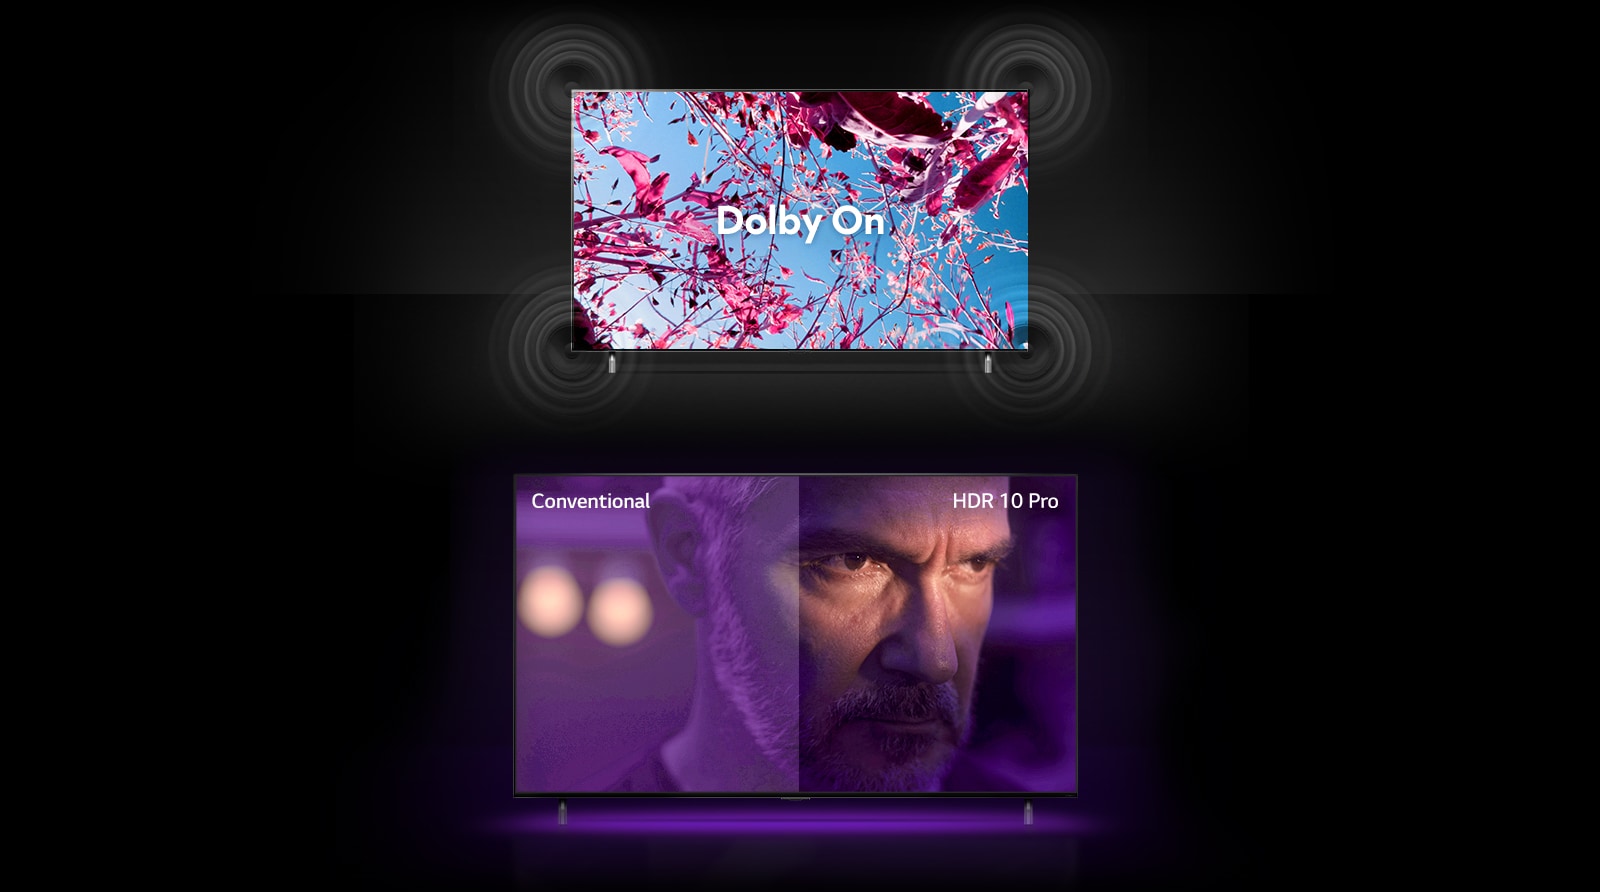 TV-zaslon QNED prikazuje roza cvetove ogrščice na poletnem polju, na sredini pa piše Dolby OFF. Slika na zaslonu postane svetlejša in besedilo se spremeni v Dolby ON. Spodaj je še en televizor QNED in jezen starec na zaslonu. Slika na TV zaslonu je razdeljena na dva dela. Na levi strani slike je barva videti medla in manj živa, na desni polovici slike pa so barve bolj žive in jih je več. V zgornjem levem kotu piše "konvencionalno", v zgornjem desnem kotu pa "HDR 10 PRO".